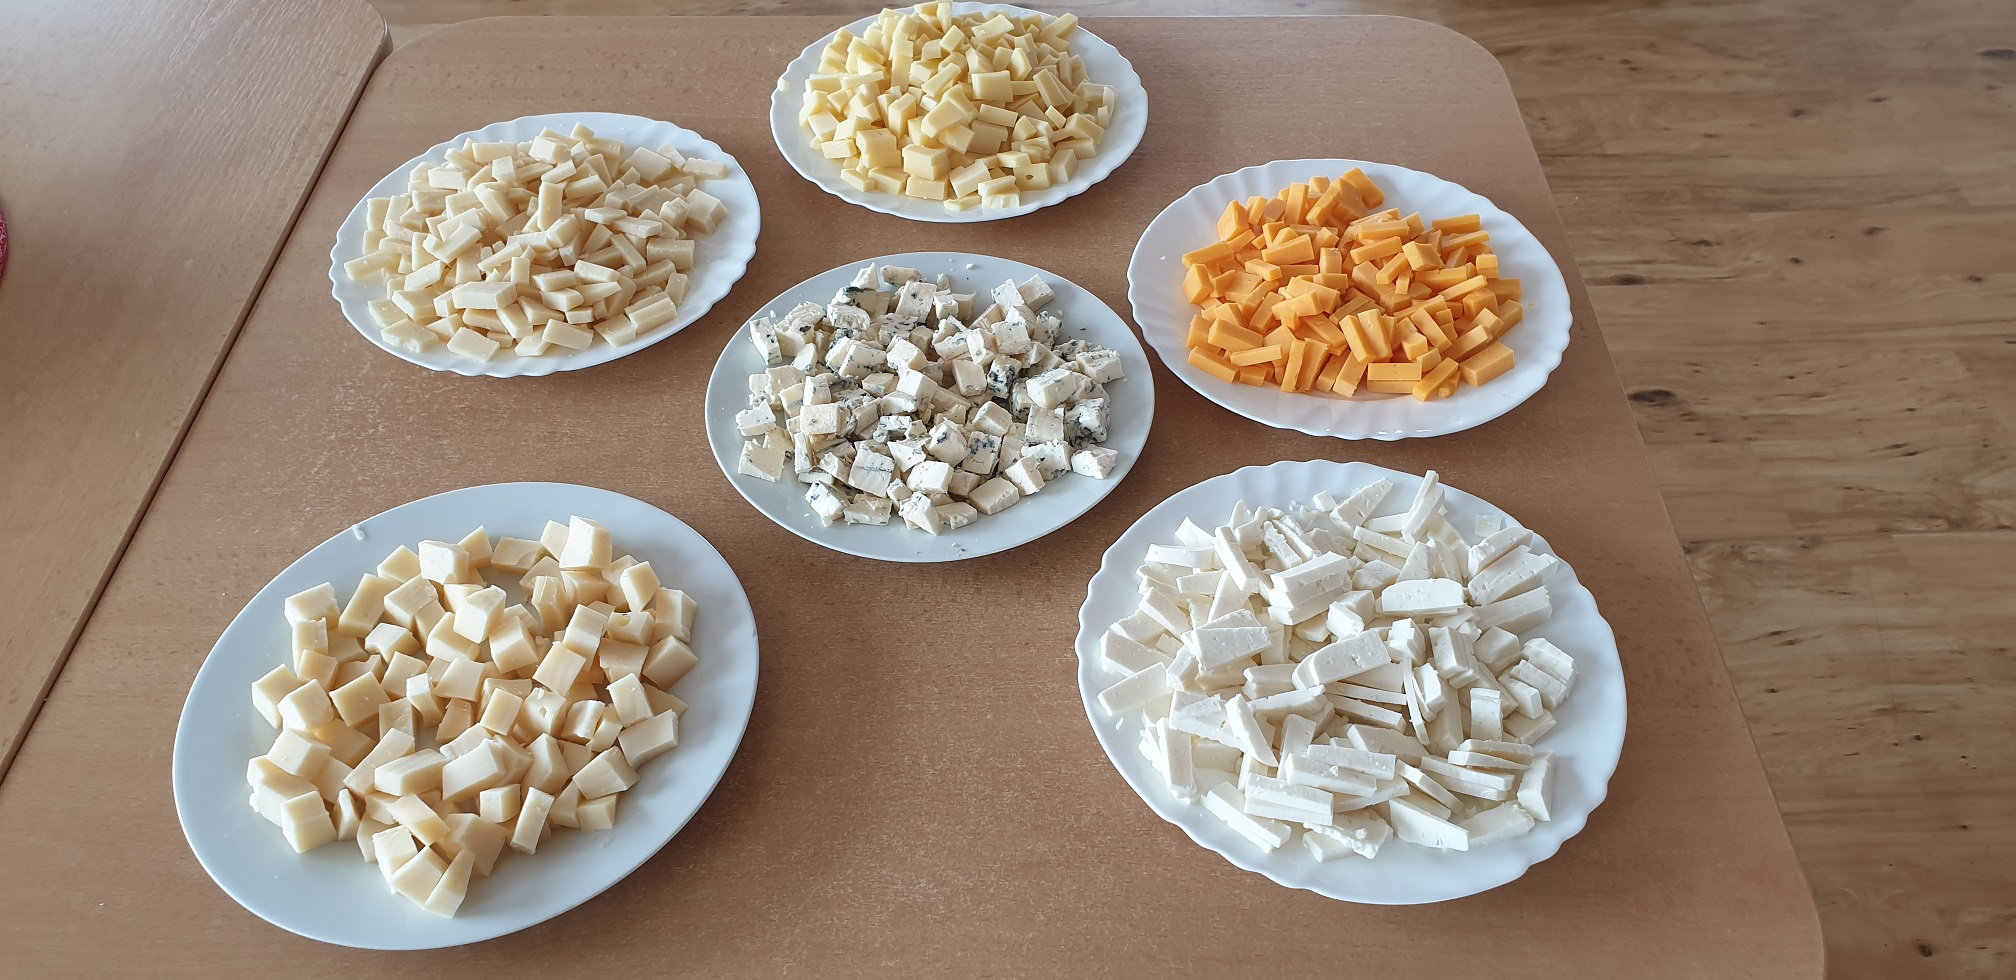 Ochutnávka sýrů v Seniorcentru v Modřicích